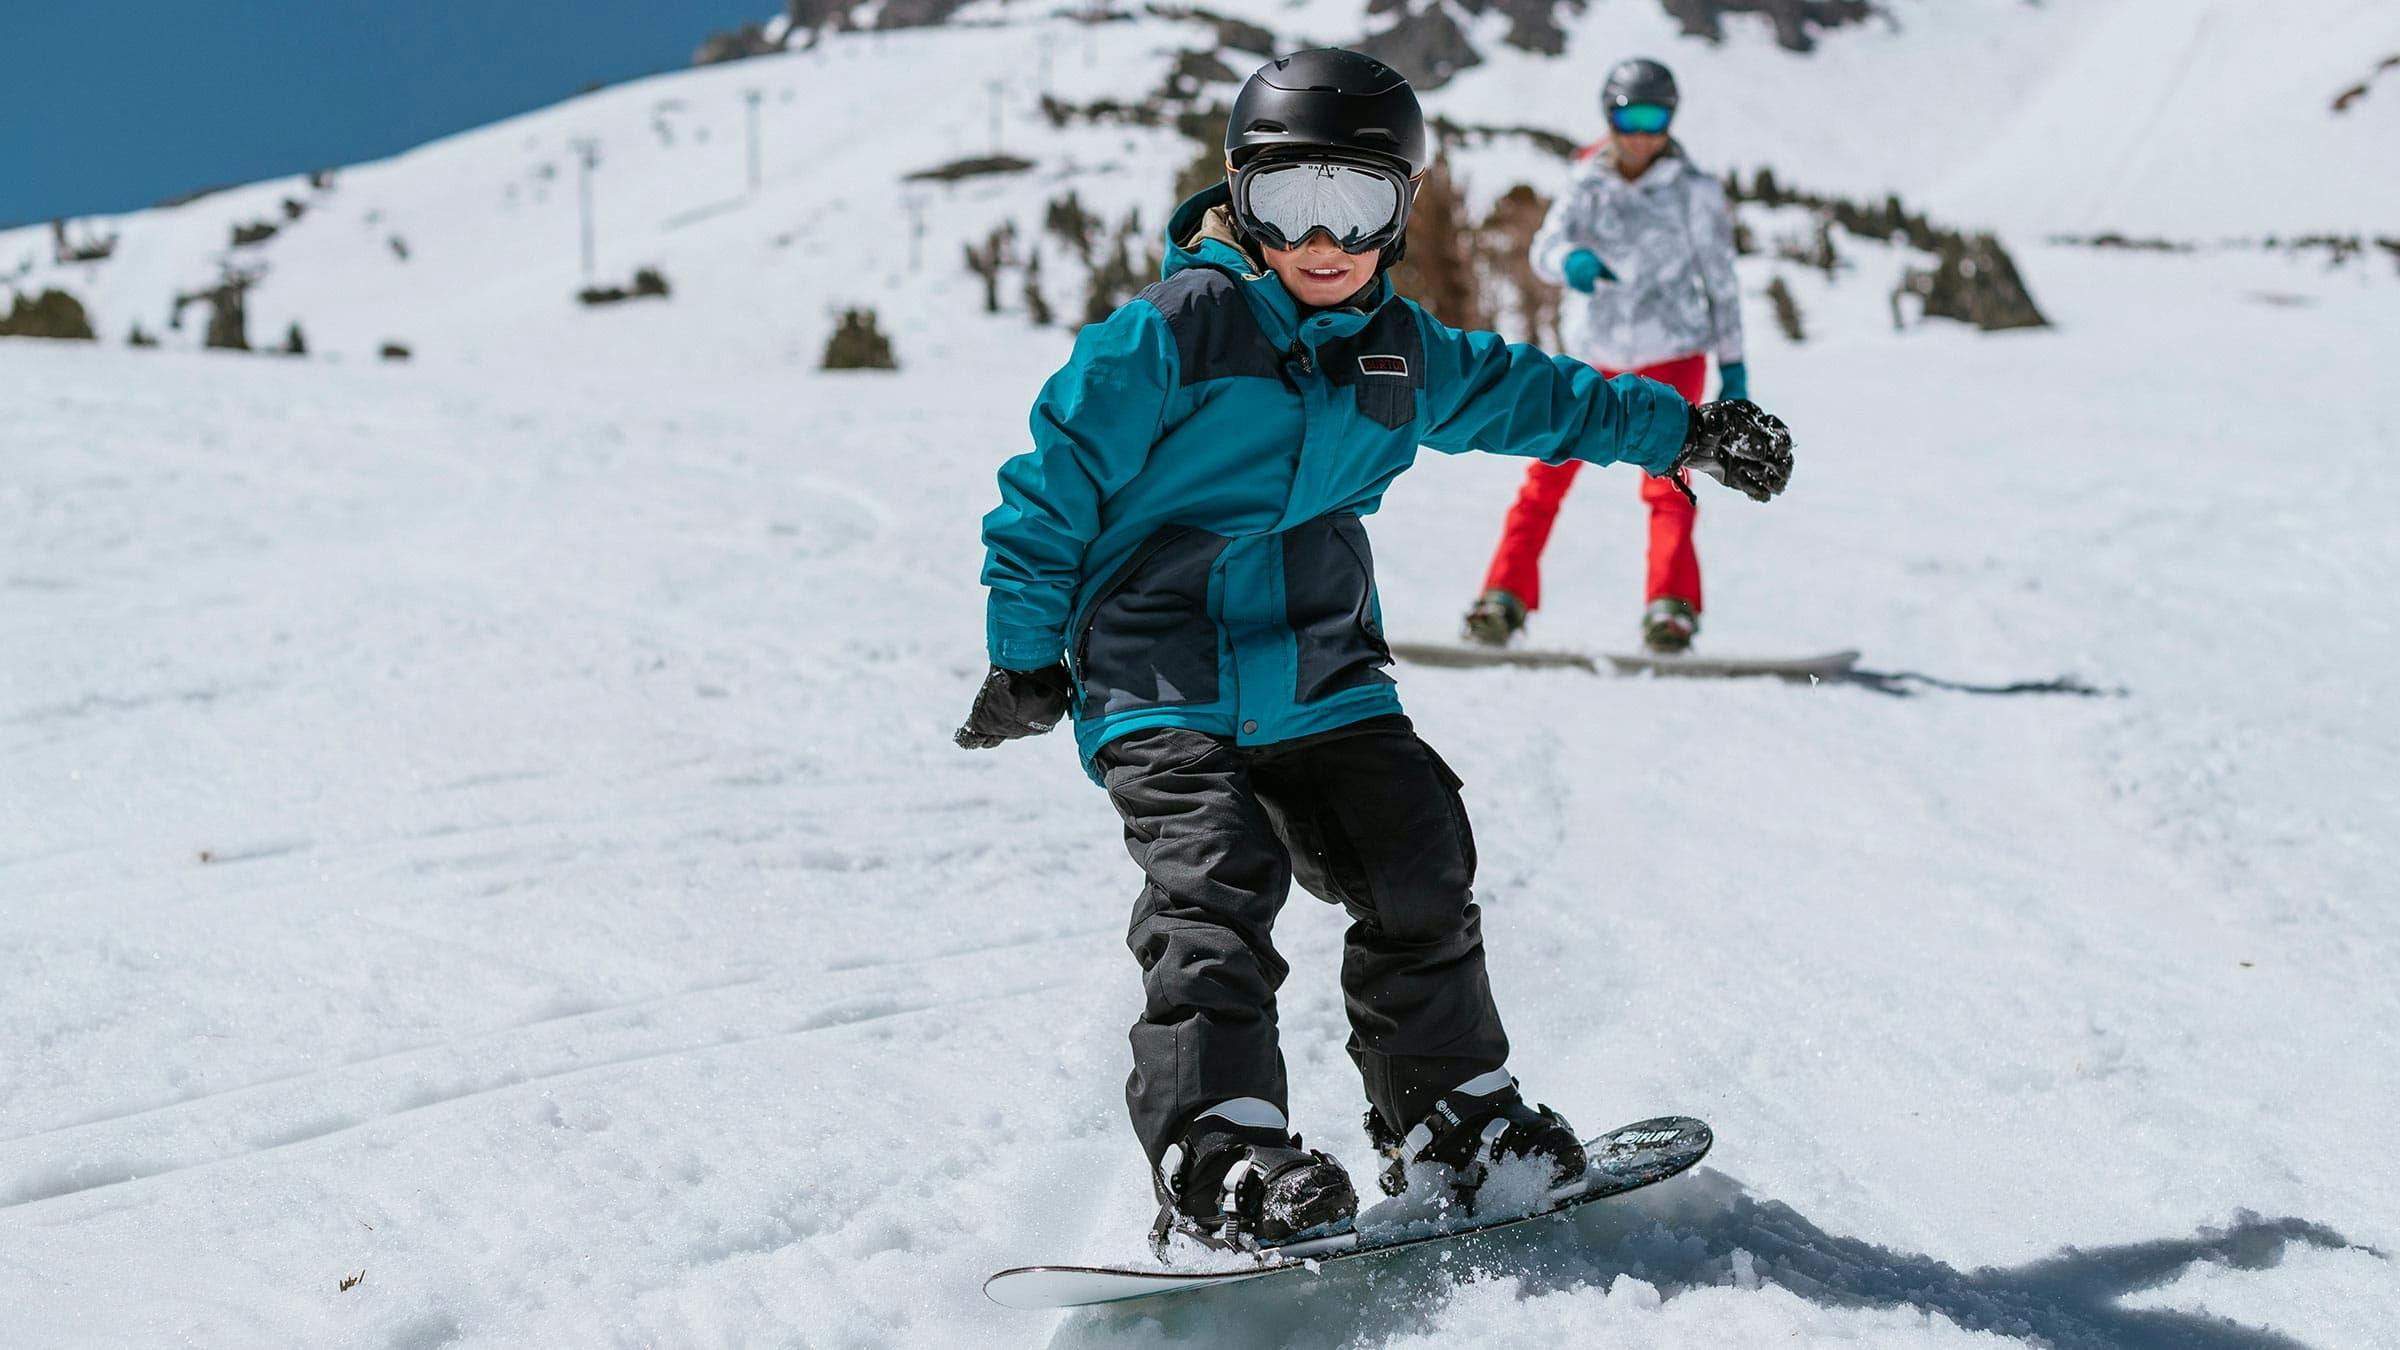 Child beginner snowboarder